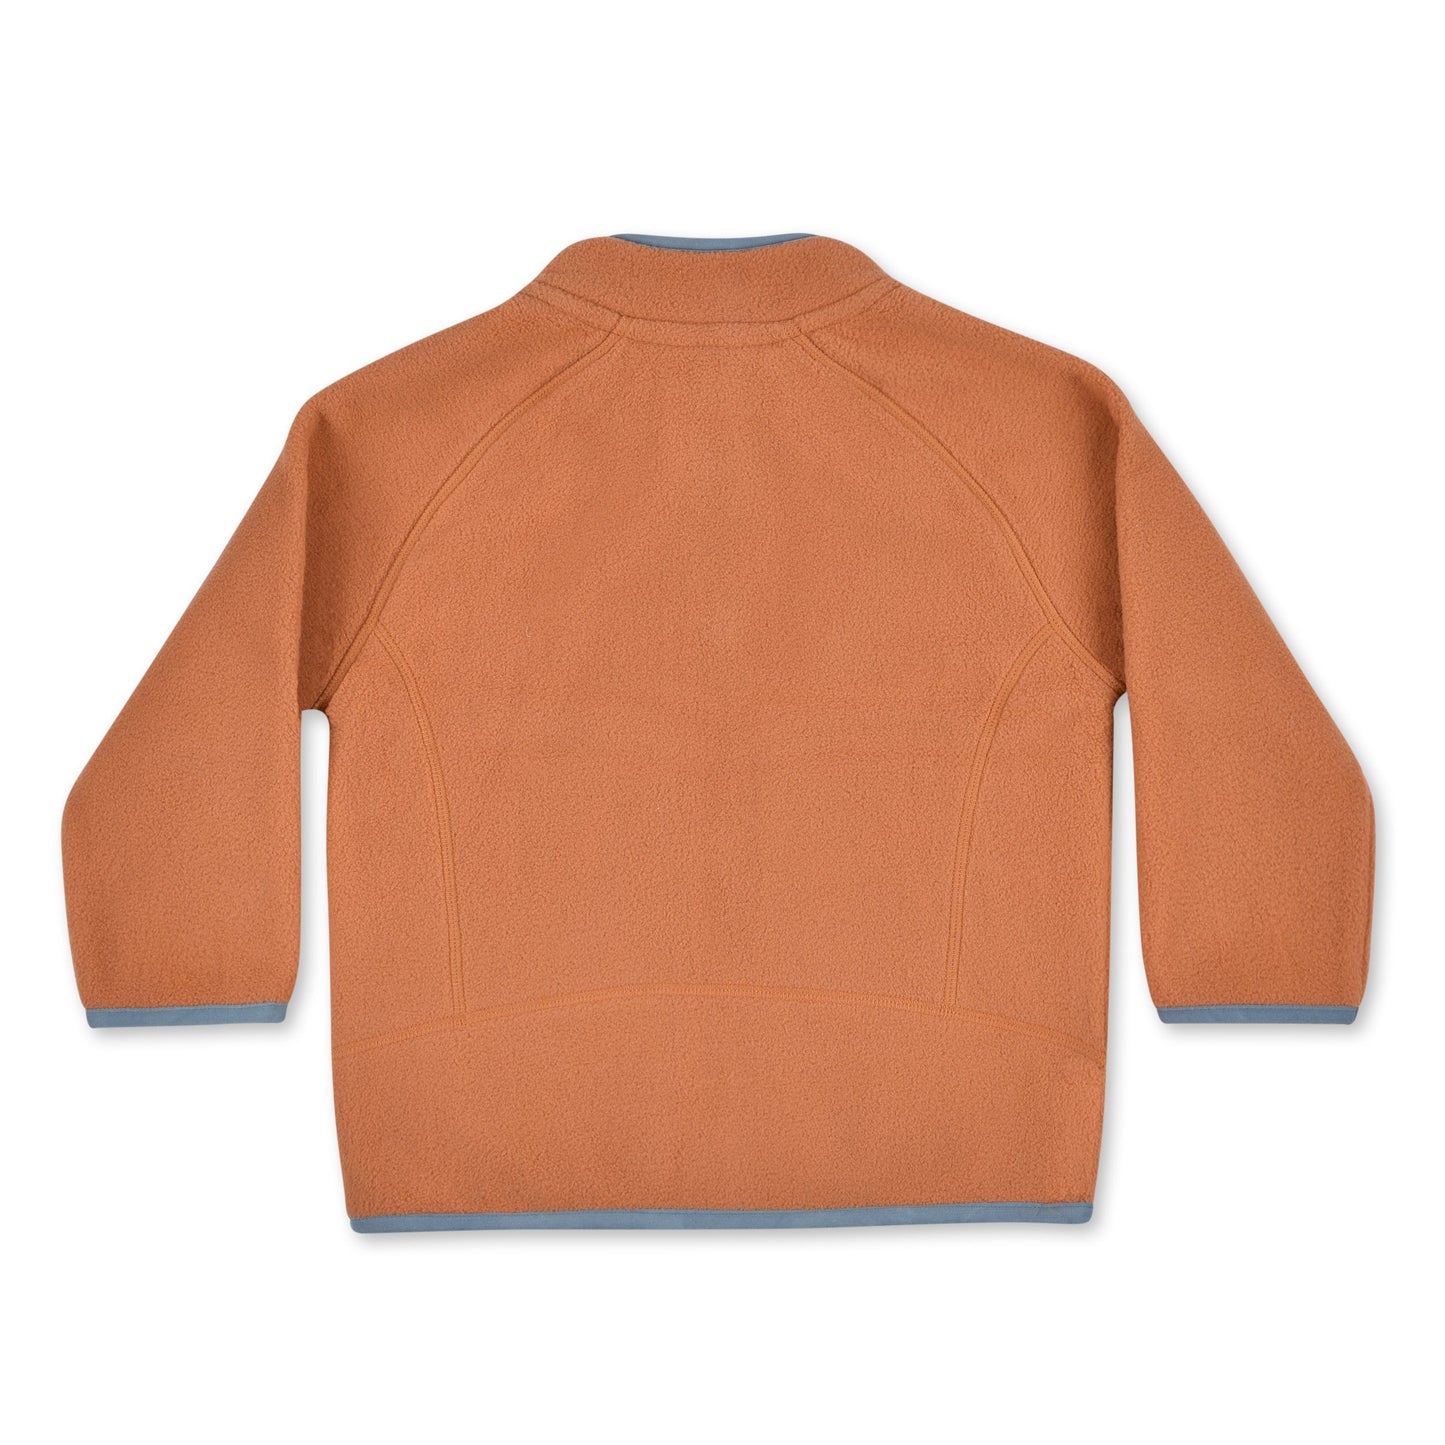 Oakiwear Kids Fleece Jacket 200 Series Polartec®, Burnt Orange Warm Mid Layer